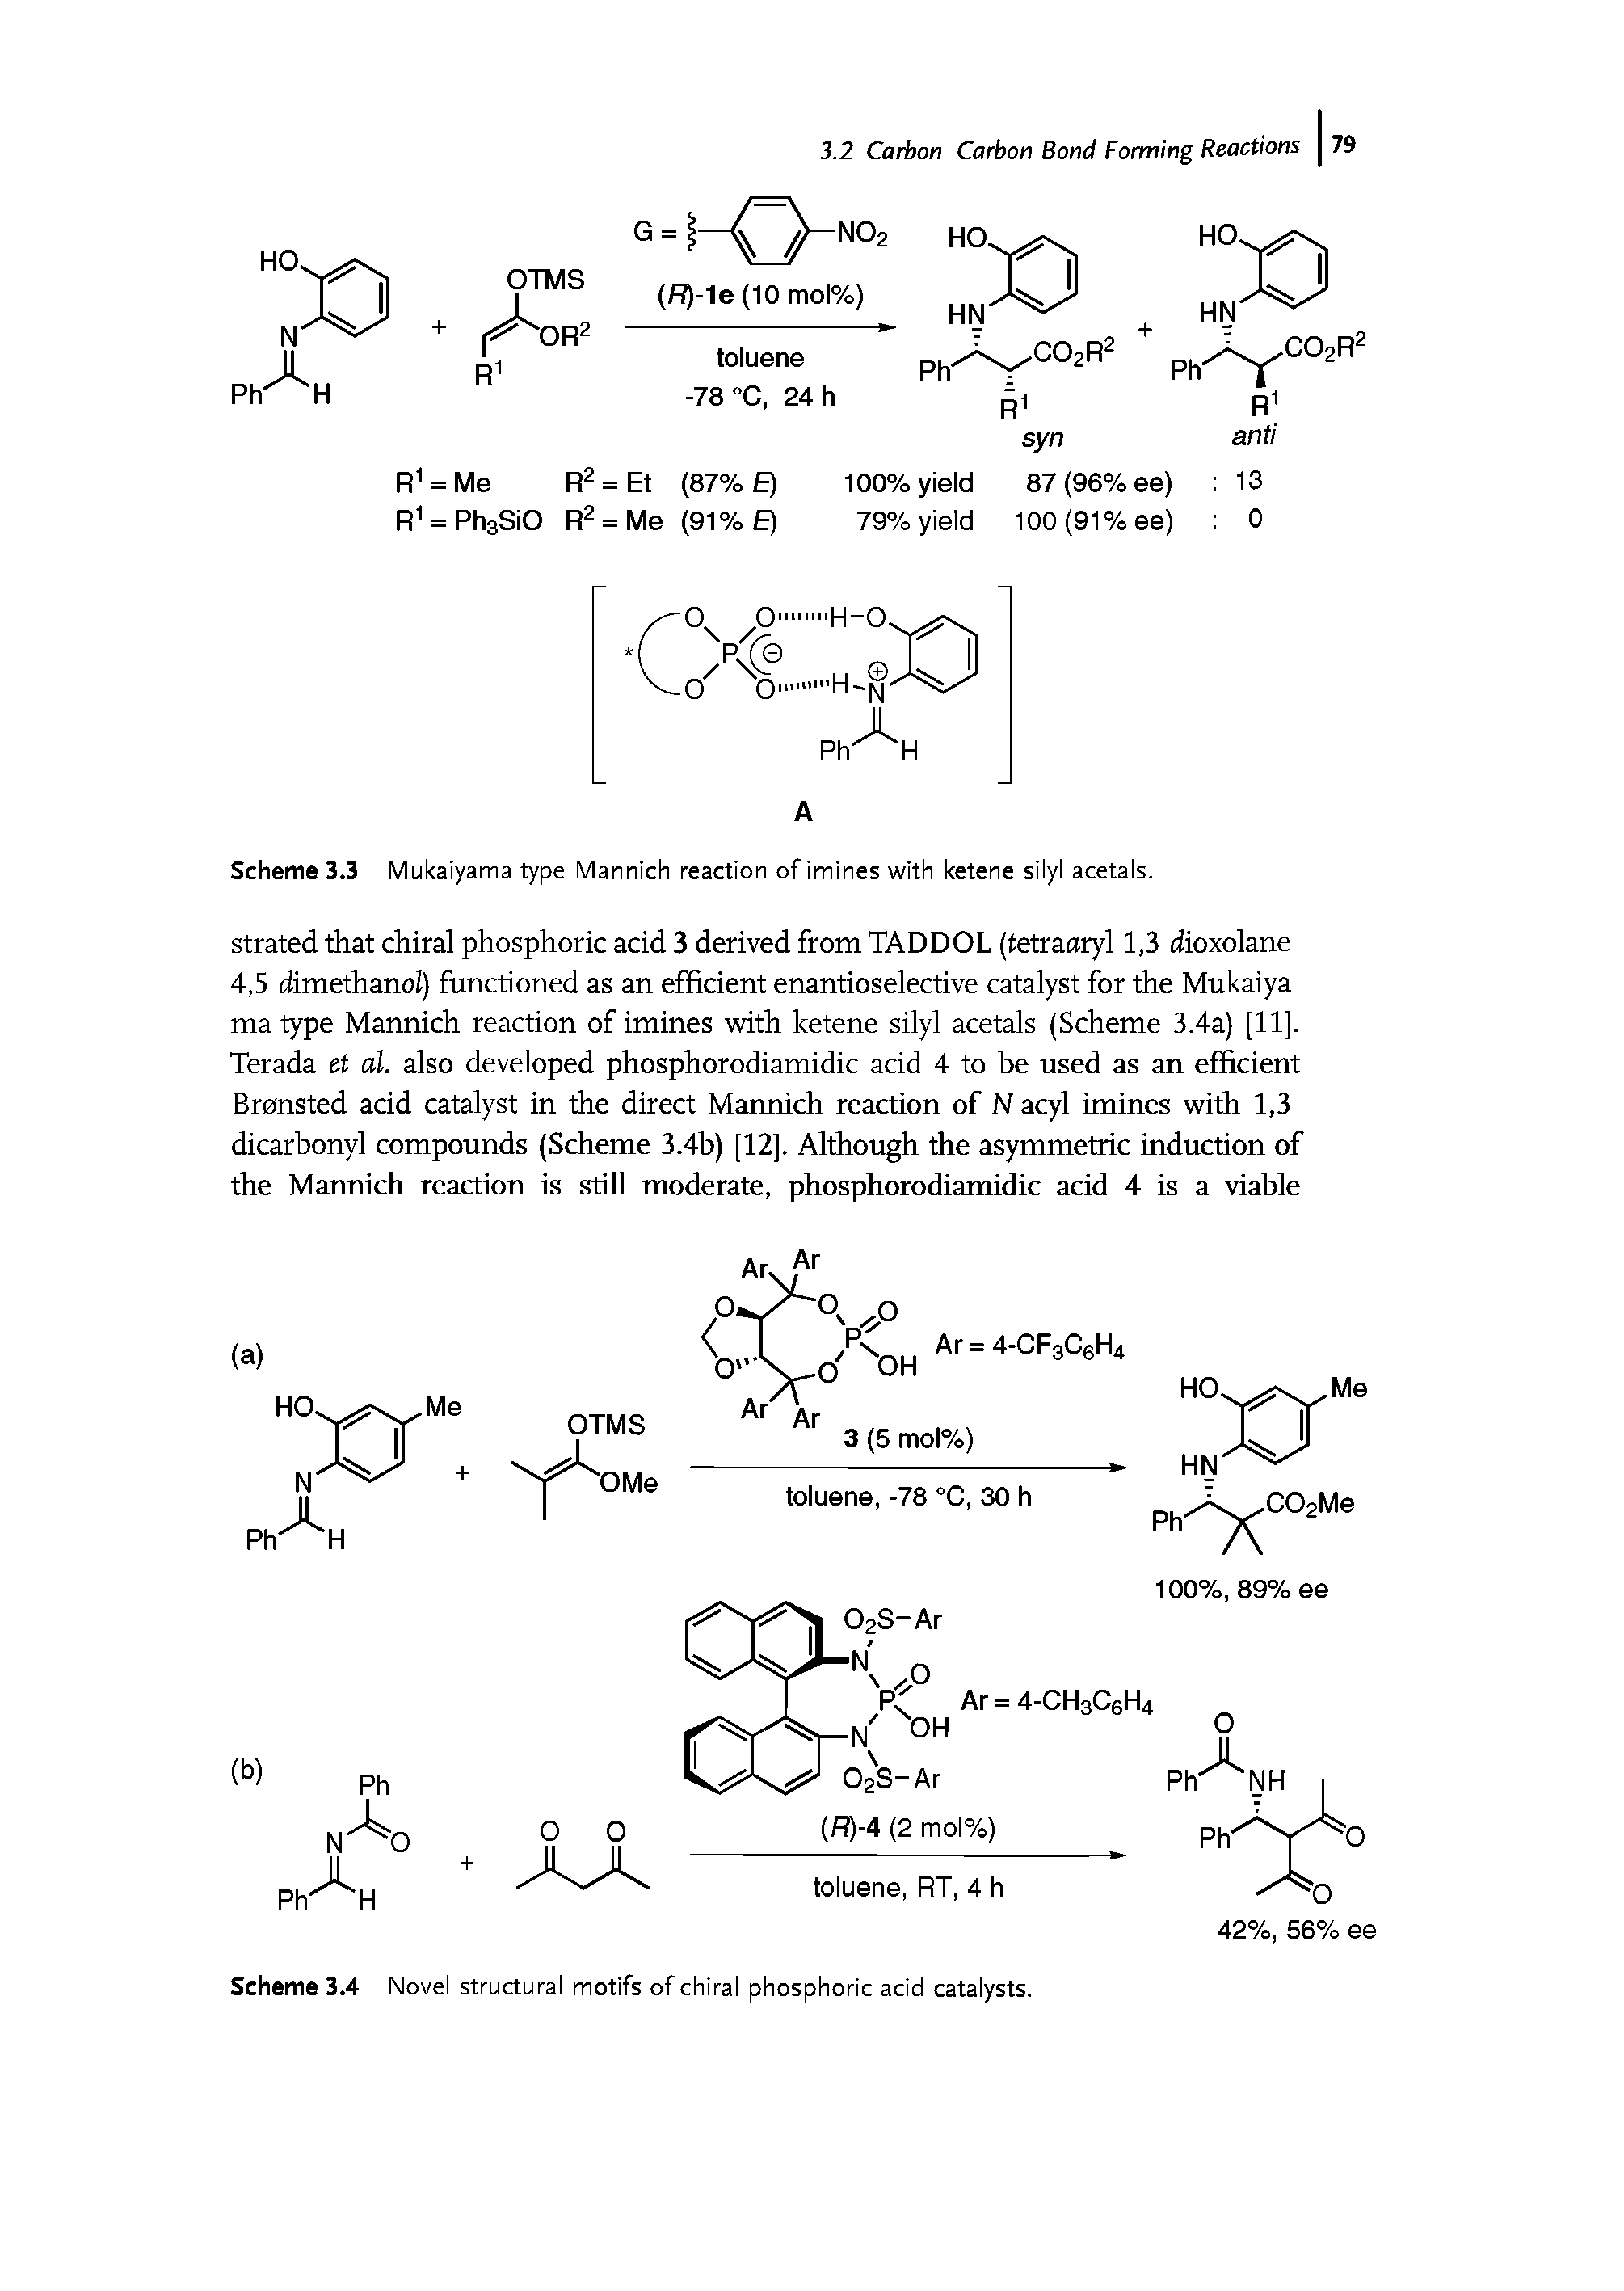 Scheme 3.3 Mukaiyama type Mannich reaction of imines with ketene silyl acetals.